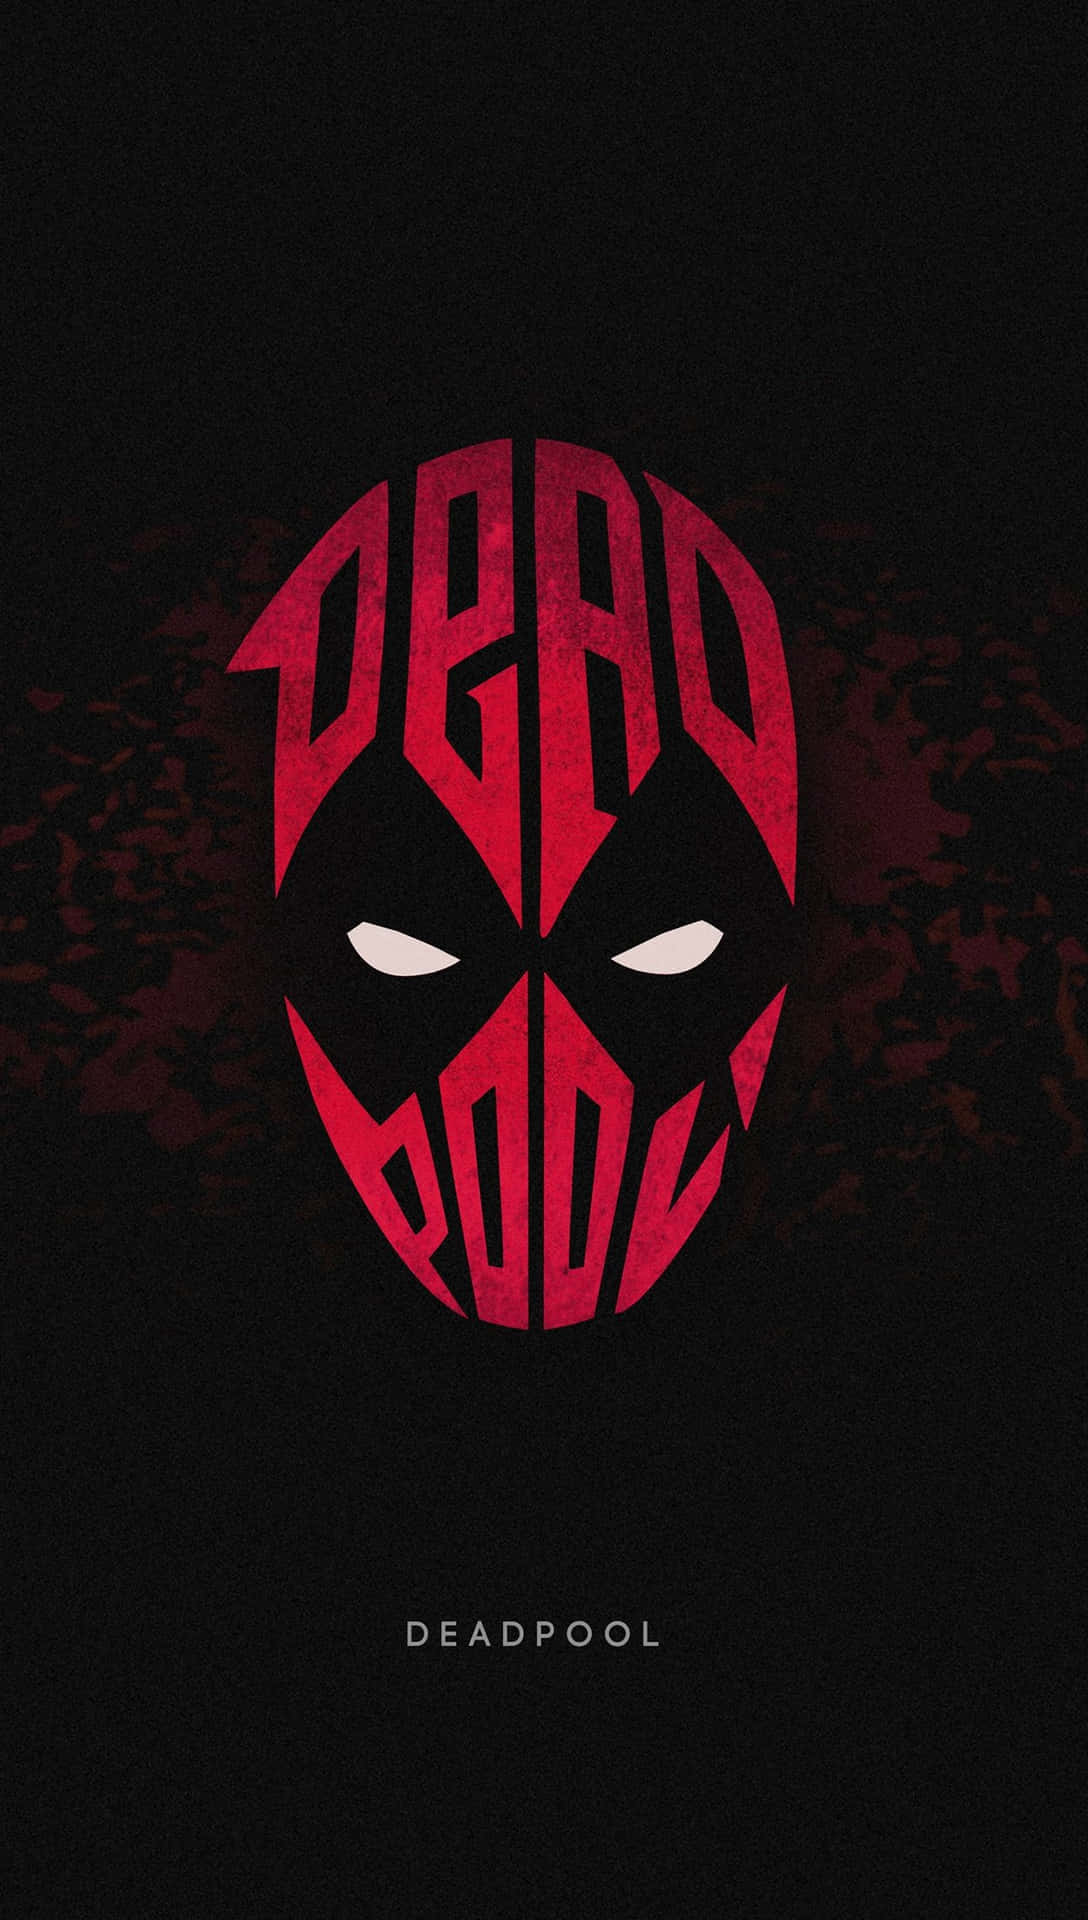 Deadpoollogotypen - Jag Är Bara Död, Inte Deadpool! Wallpaper